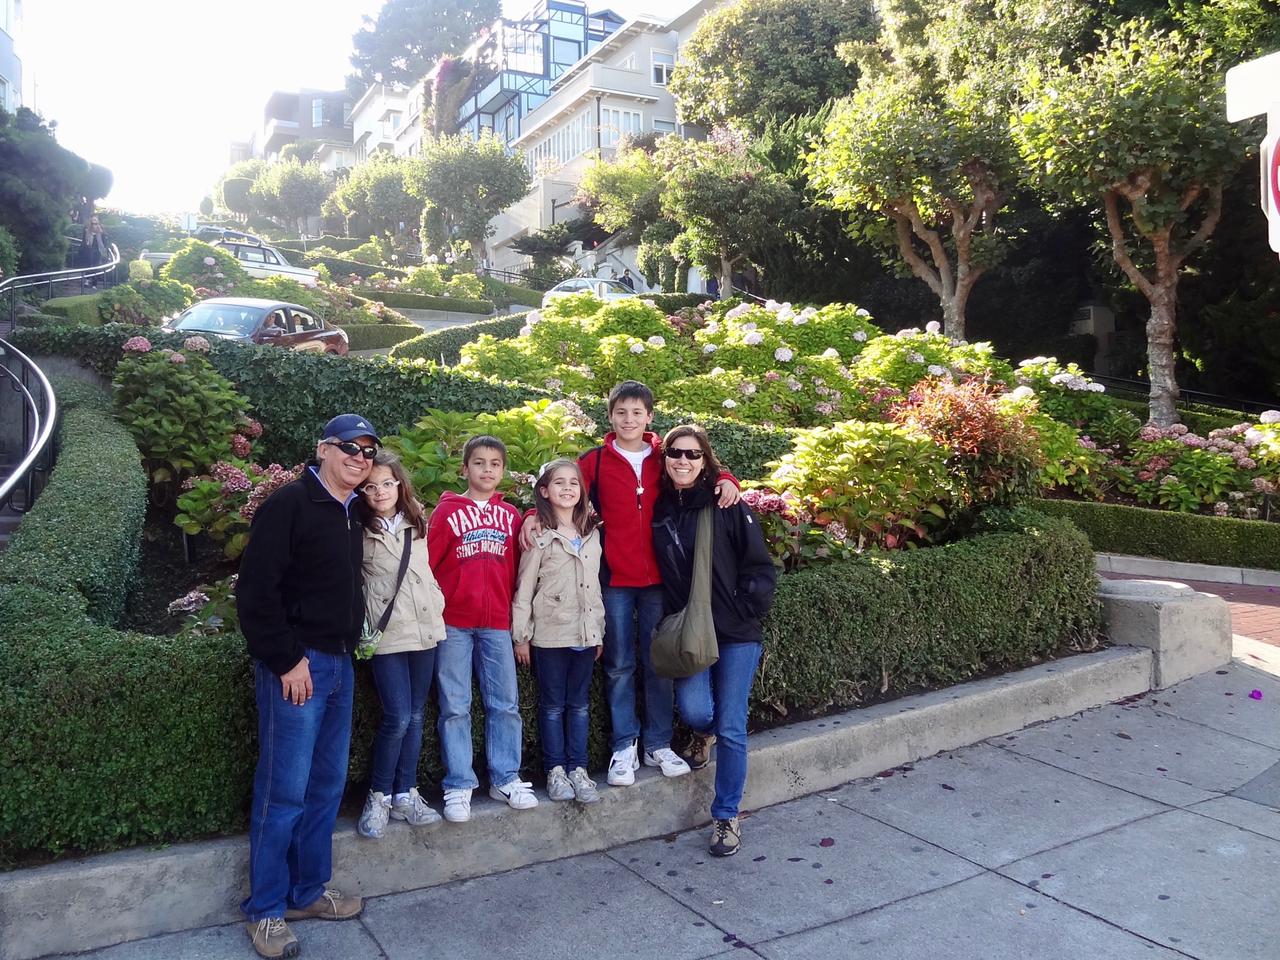 Lombard Street en San Francisco, California, Estados Unidos